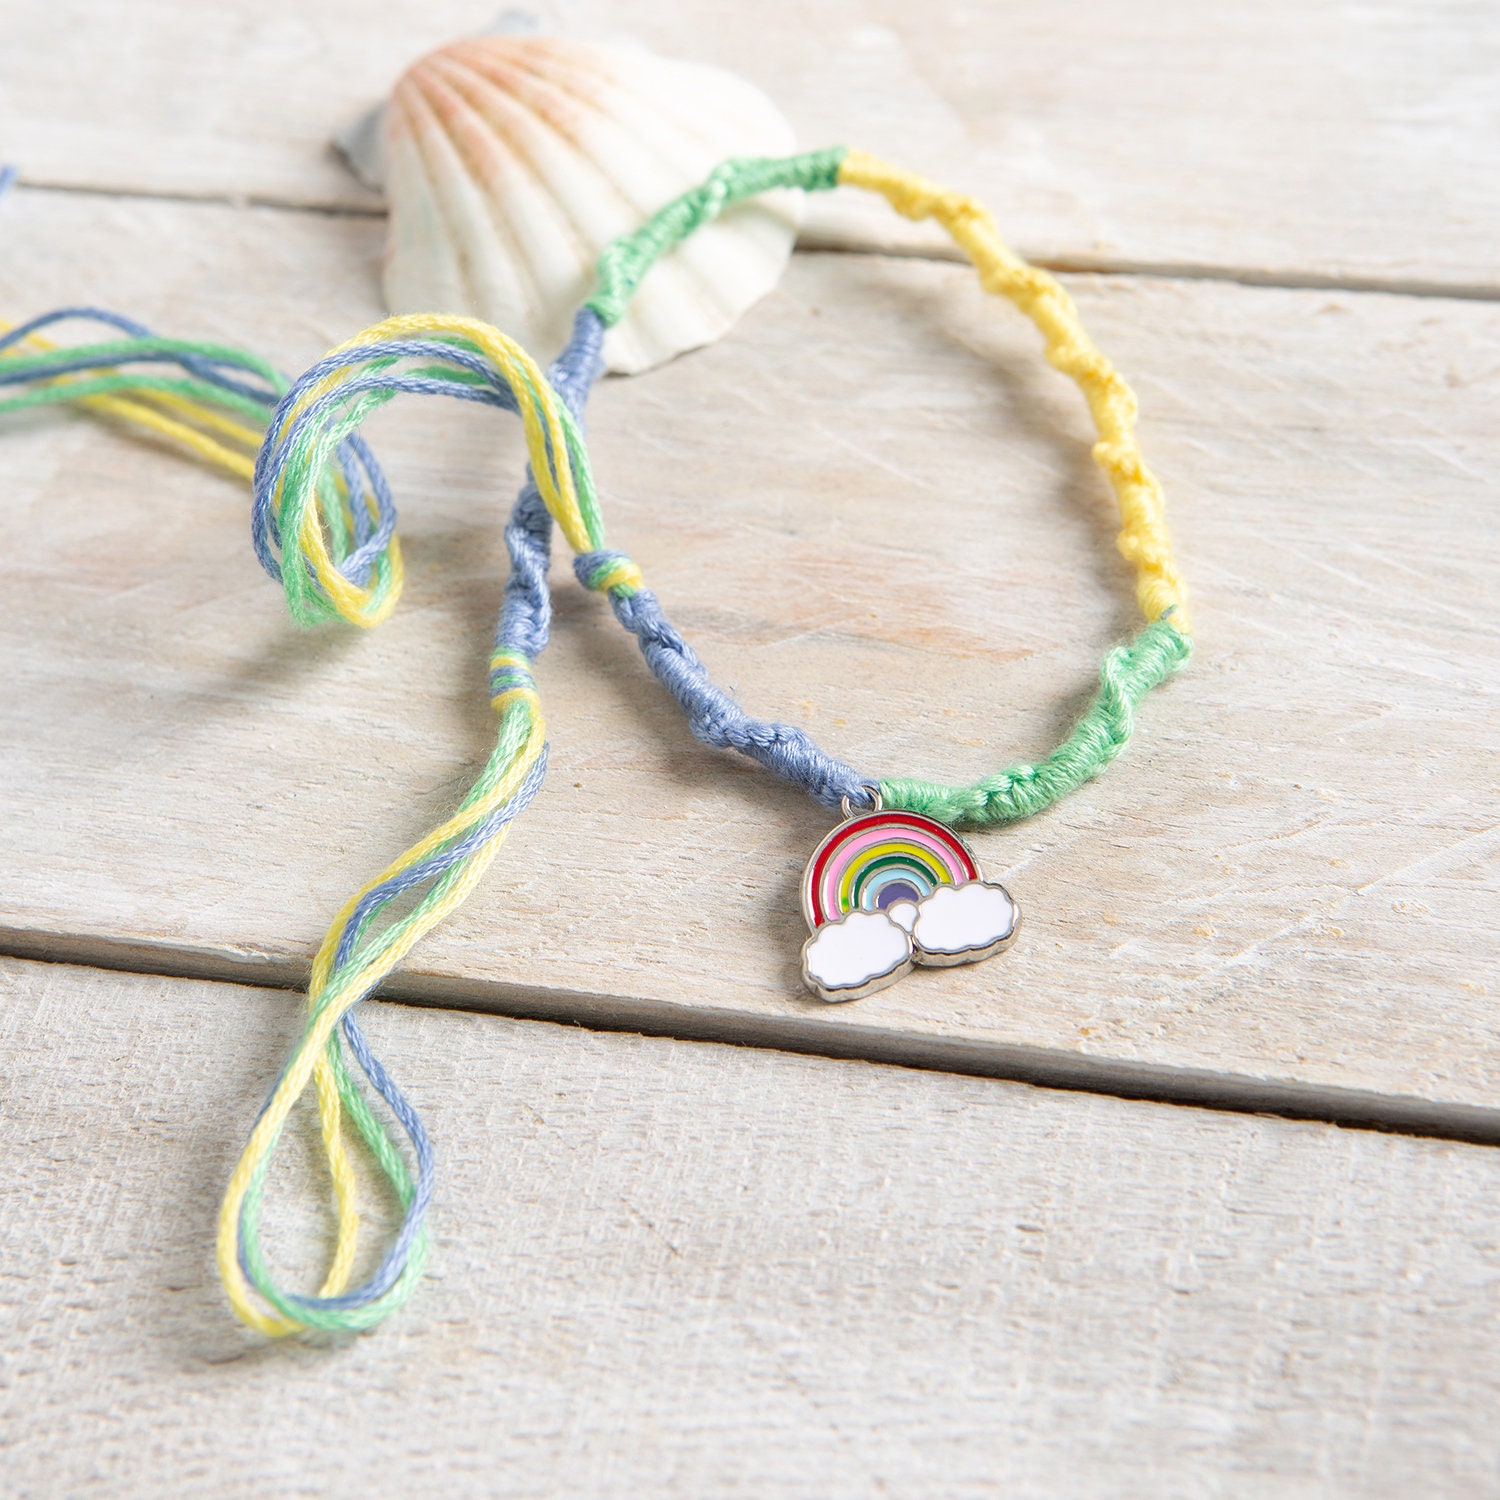 Friends Bracelets – Friendship Bracelet Making Kit TOY1506 - ®Enhypen Store